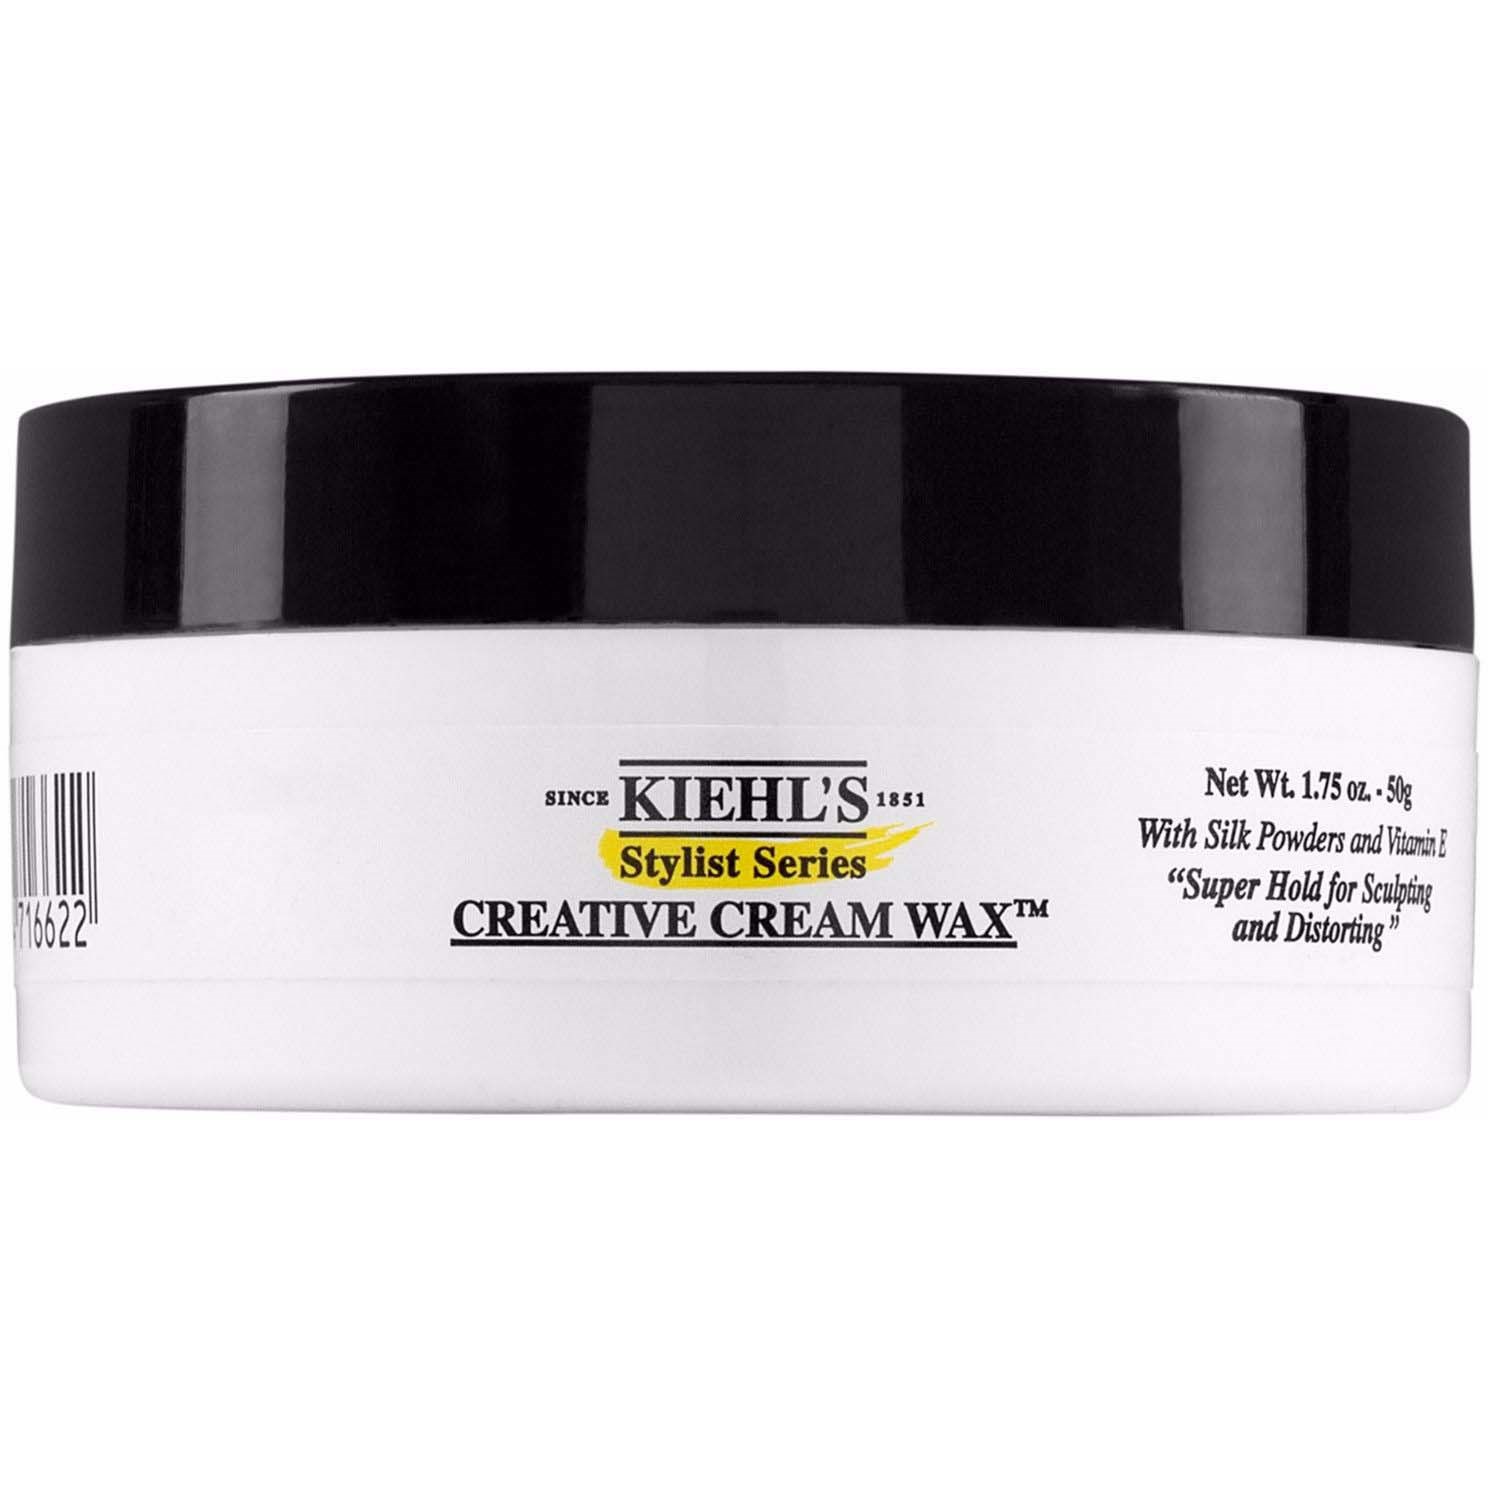 Kiehls Stylist Series Creative Cream Wax 50 g